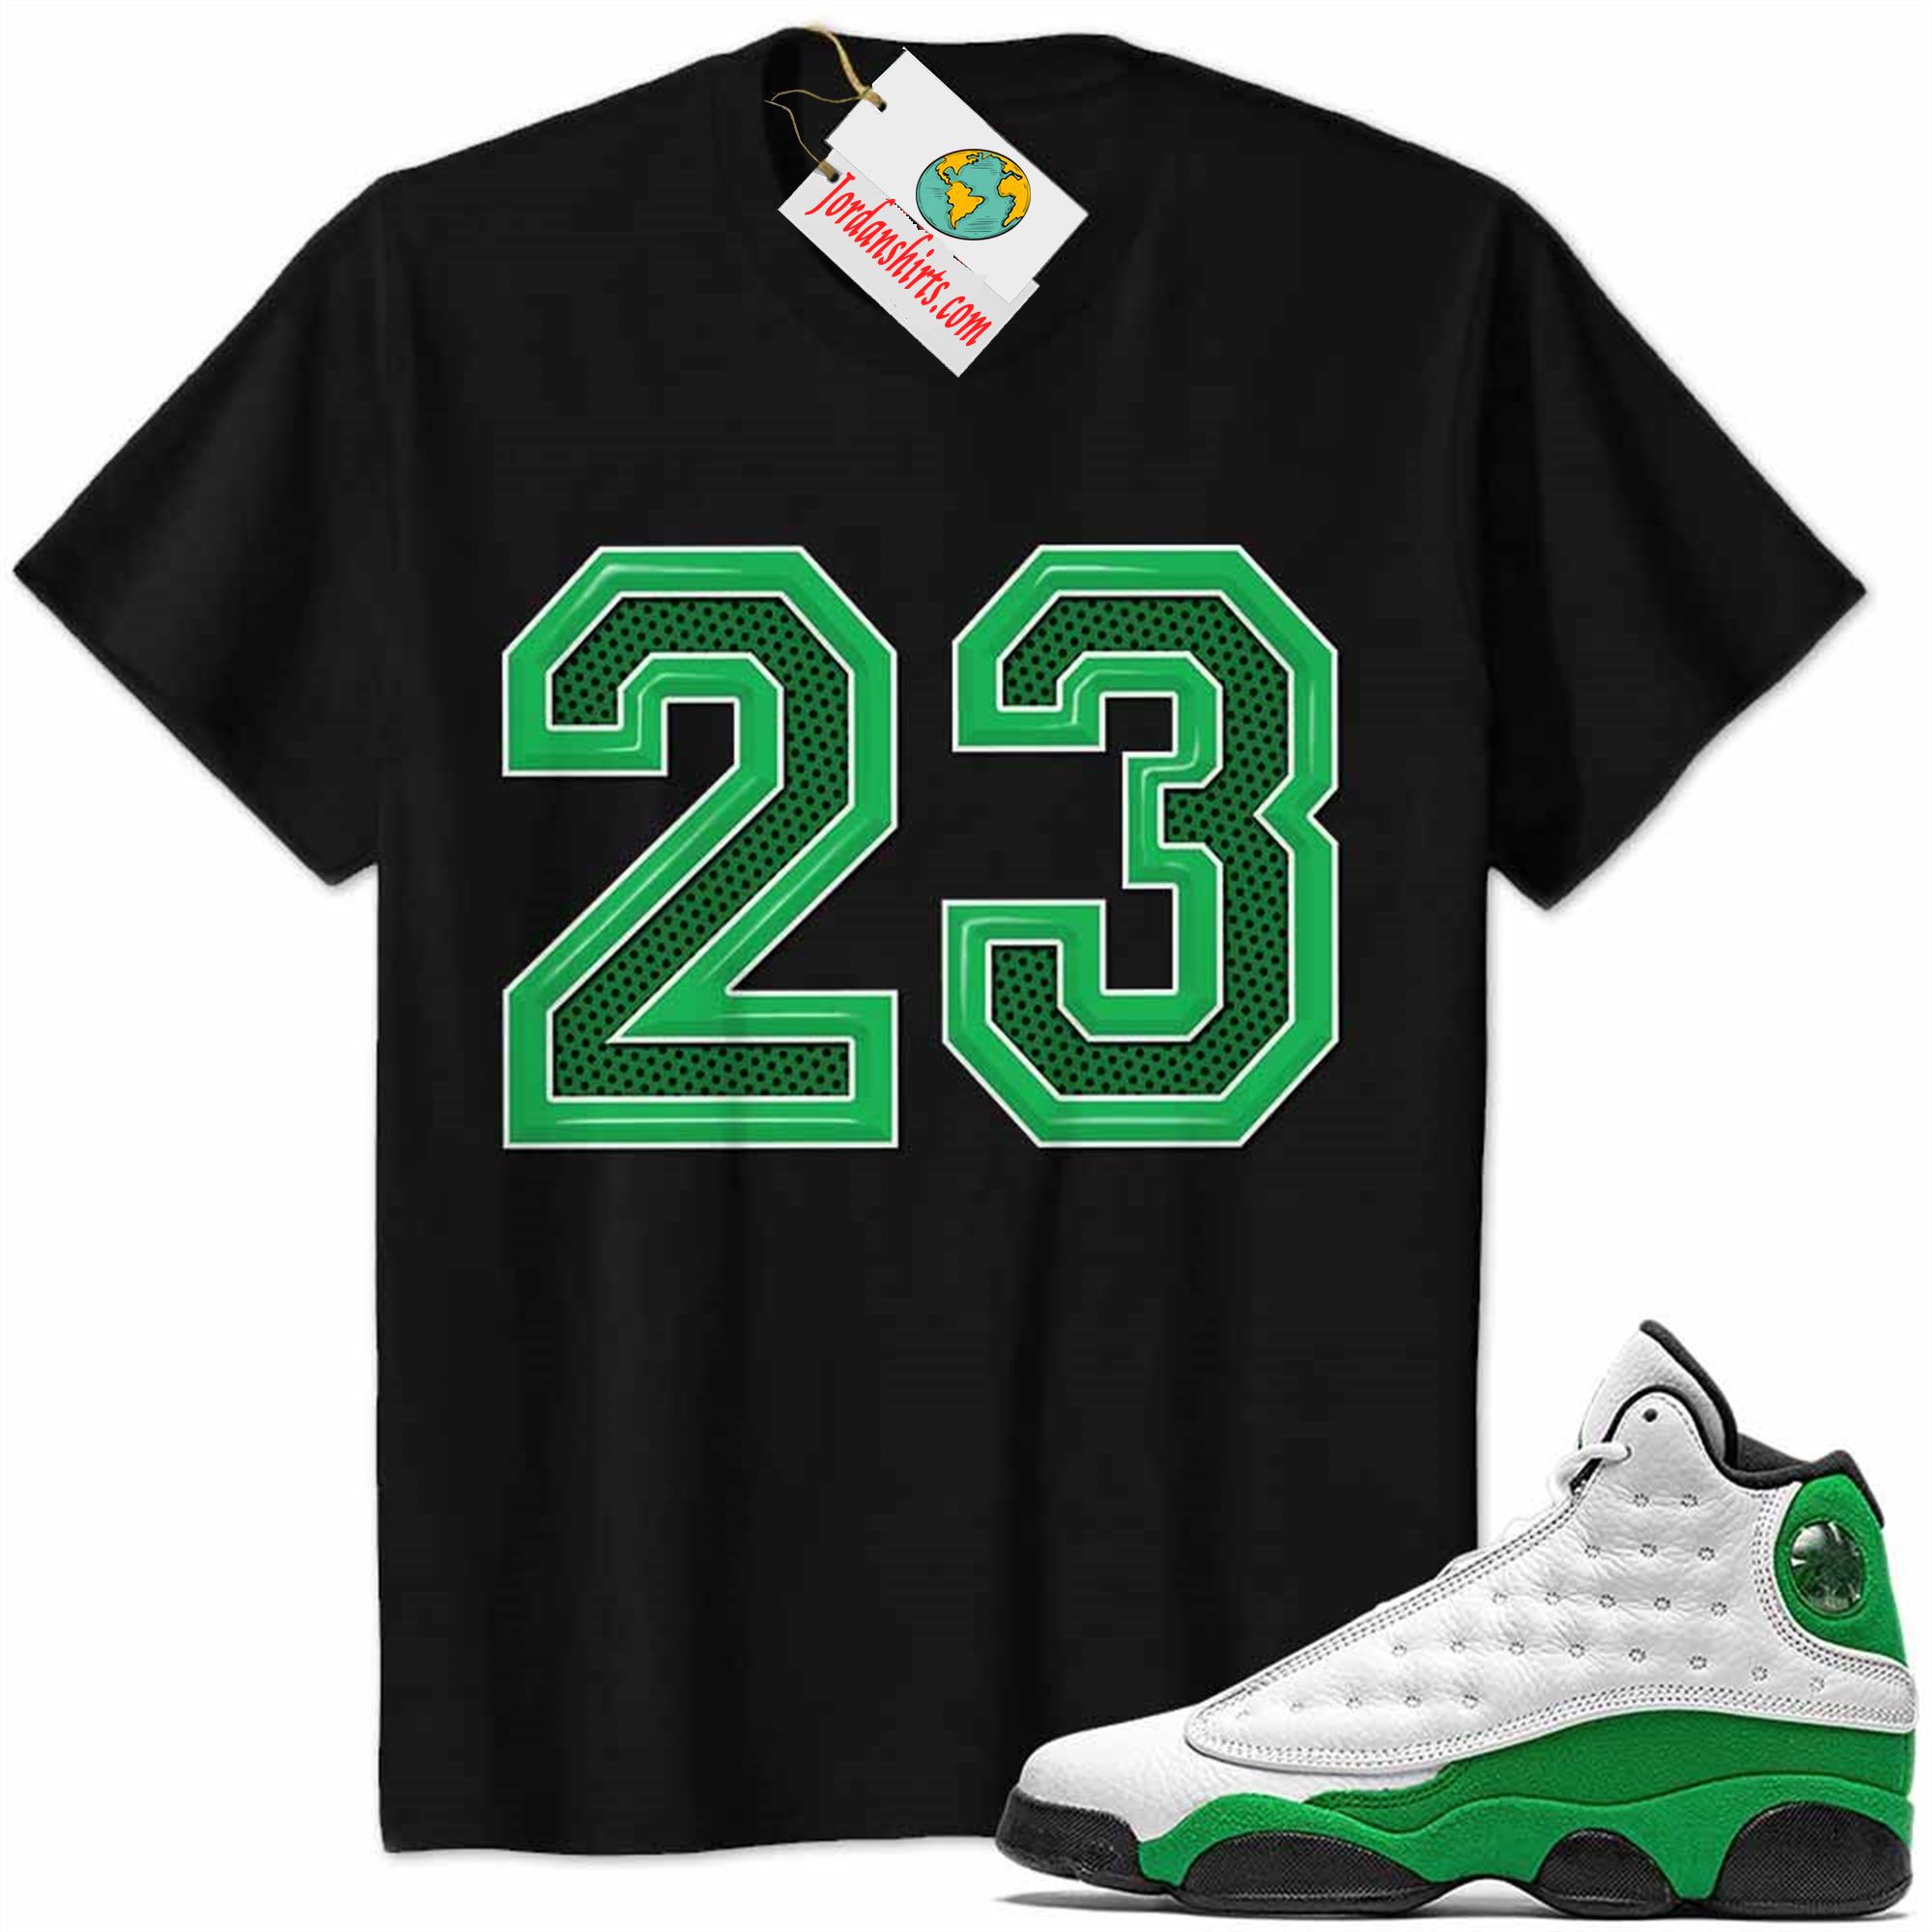 Jordan 13 Shirt, Jordan 13 Lucky Green Shirt Michael Jordan Number 23 Black Plus Size Up To 5xl